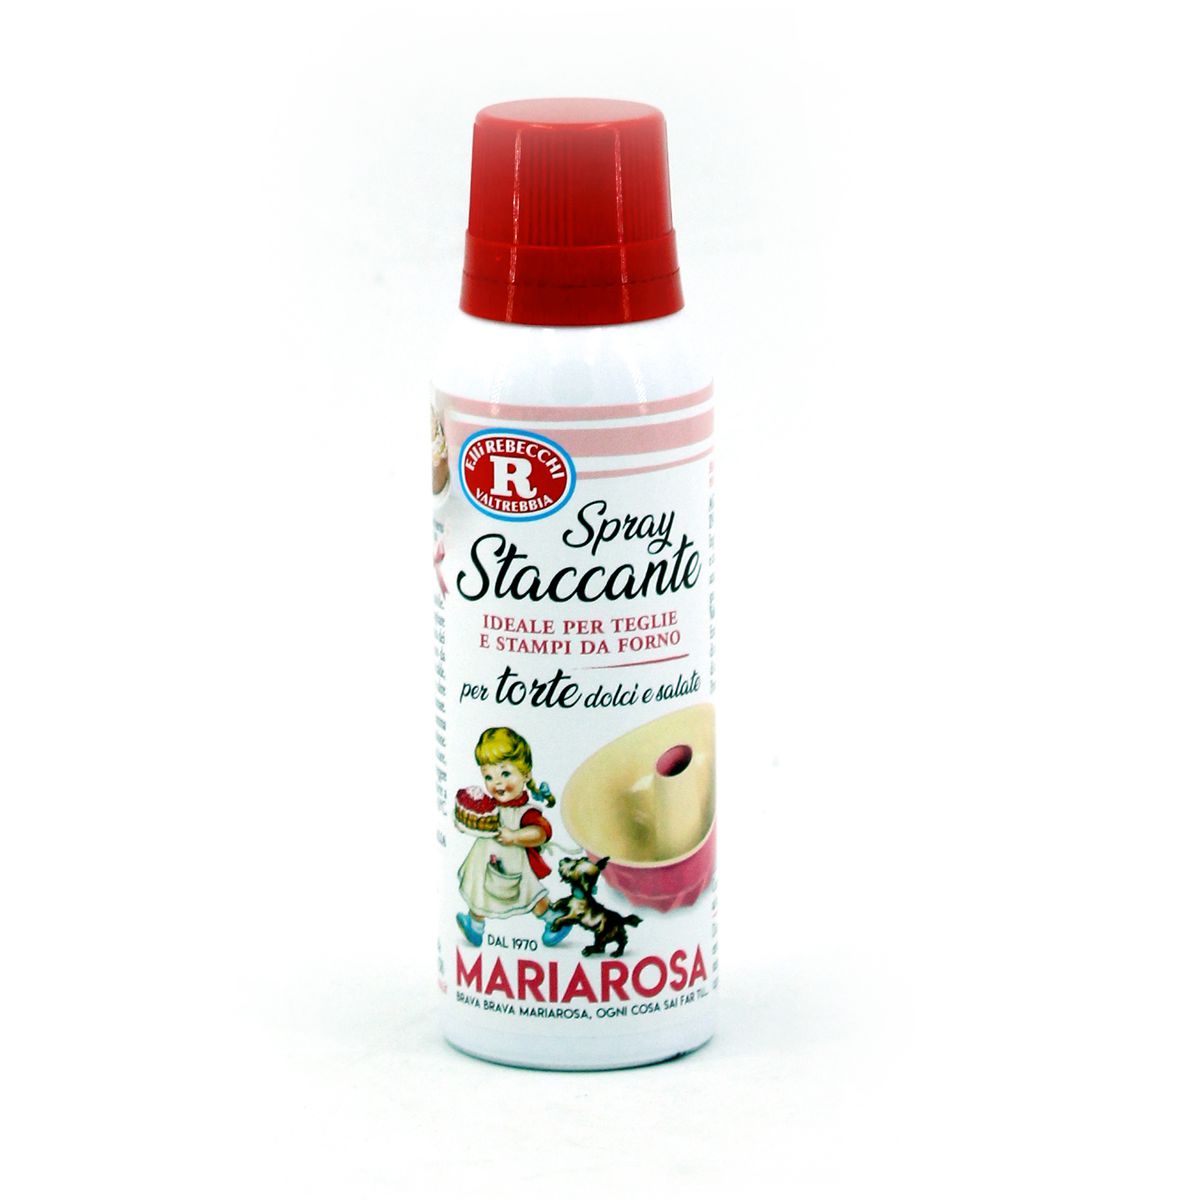 Rebecchi Mariarosa, Spray Staccante 125ml